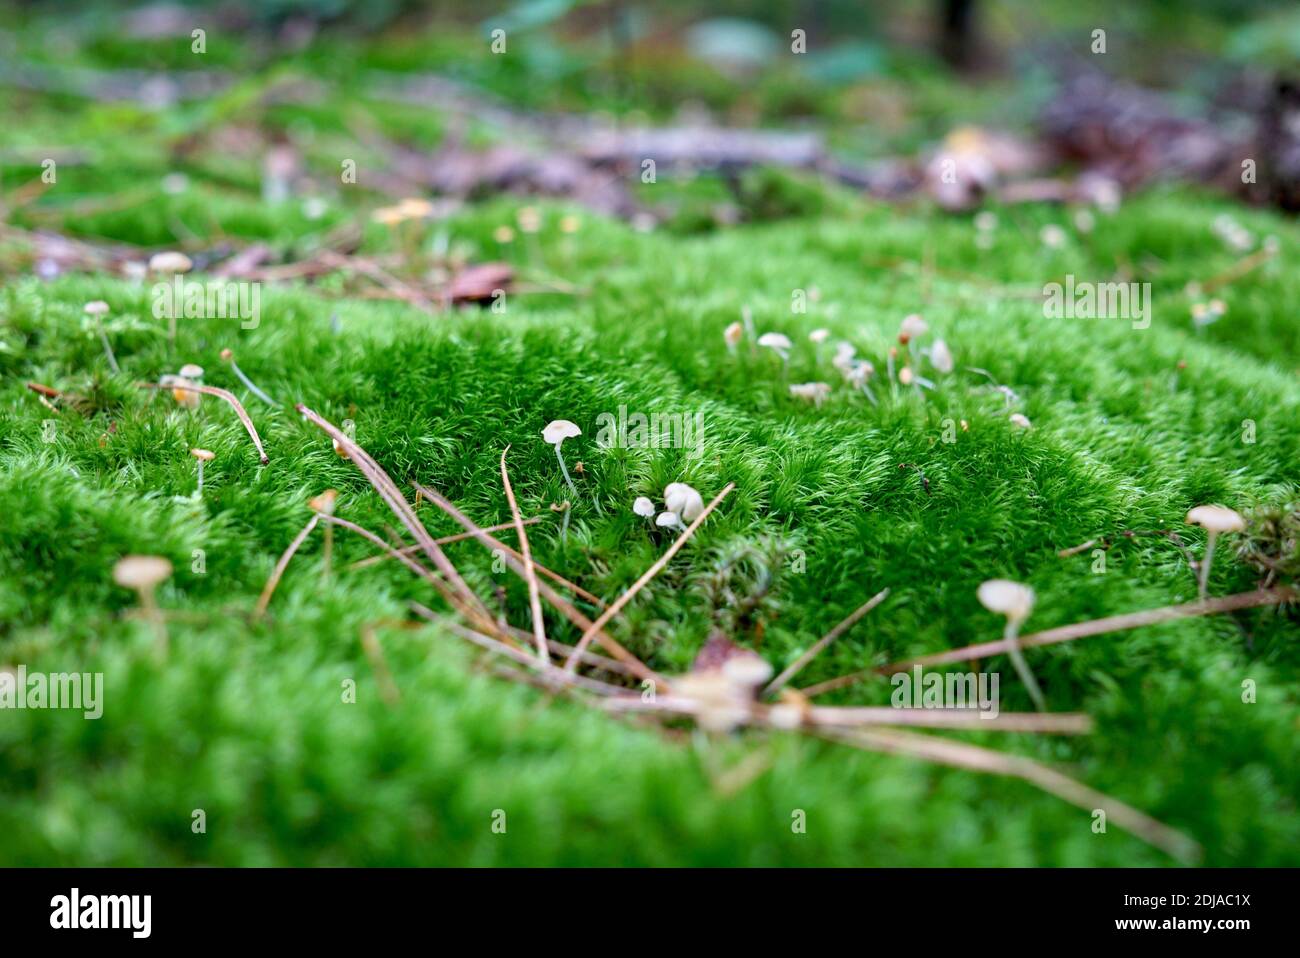 Écosystème forestier, forêt verte moussy gros plan, macro. De petits champignons blancs poussent parmi les mousses. États-Unis, Michigan Banque D'Images